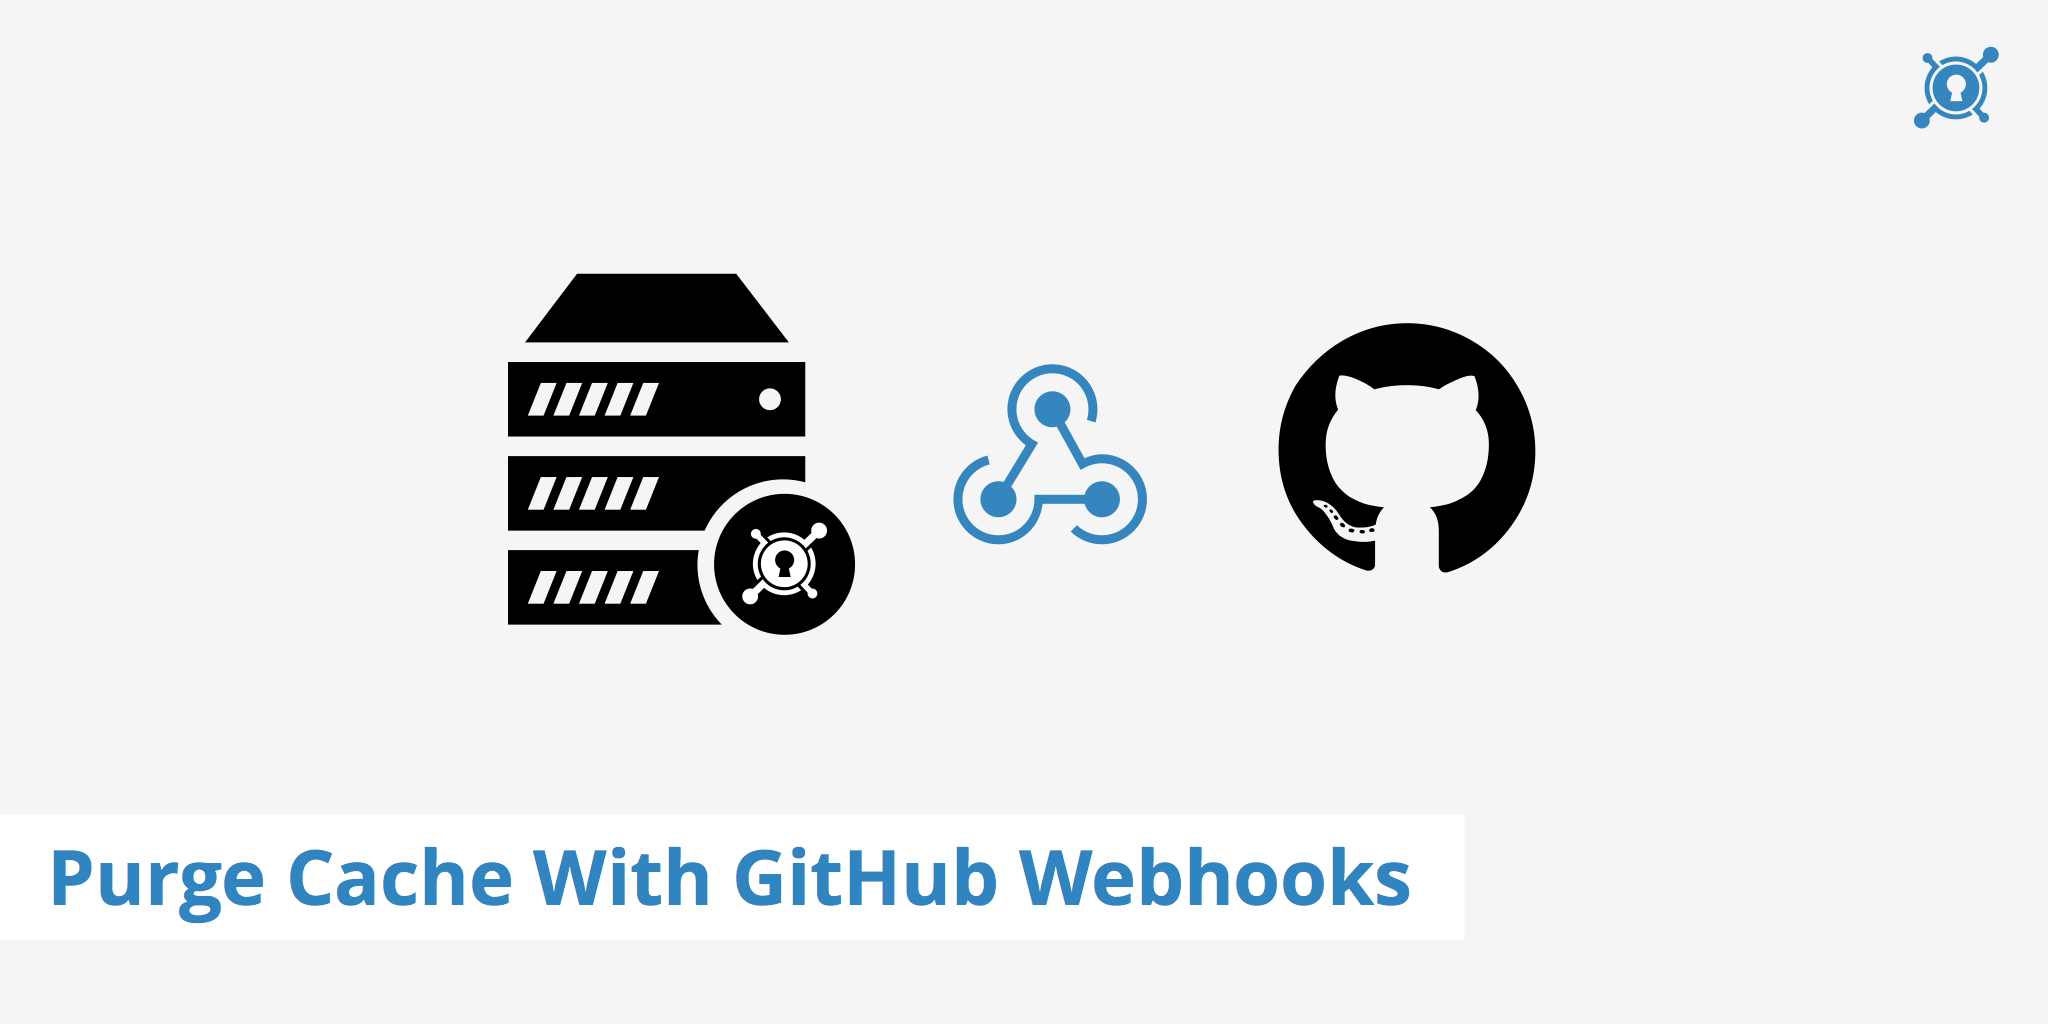 Using GitHub Webhooks to Purge Cache